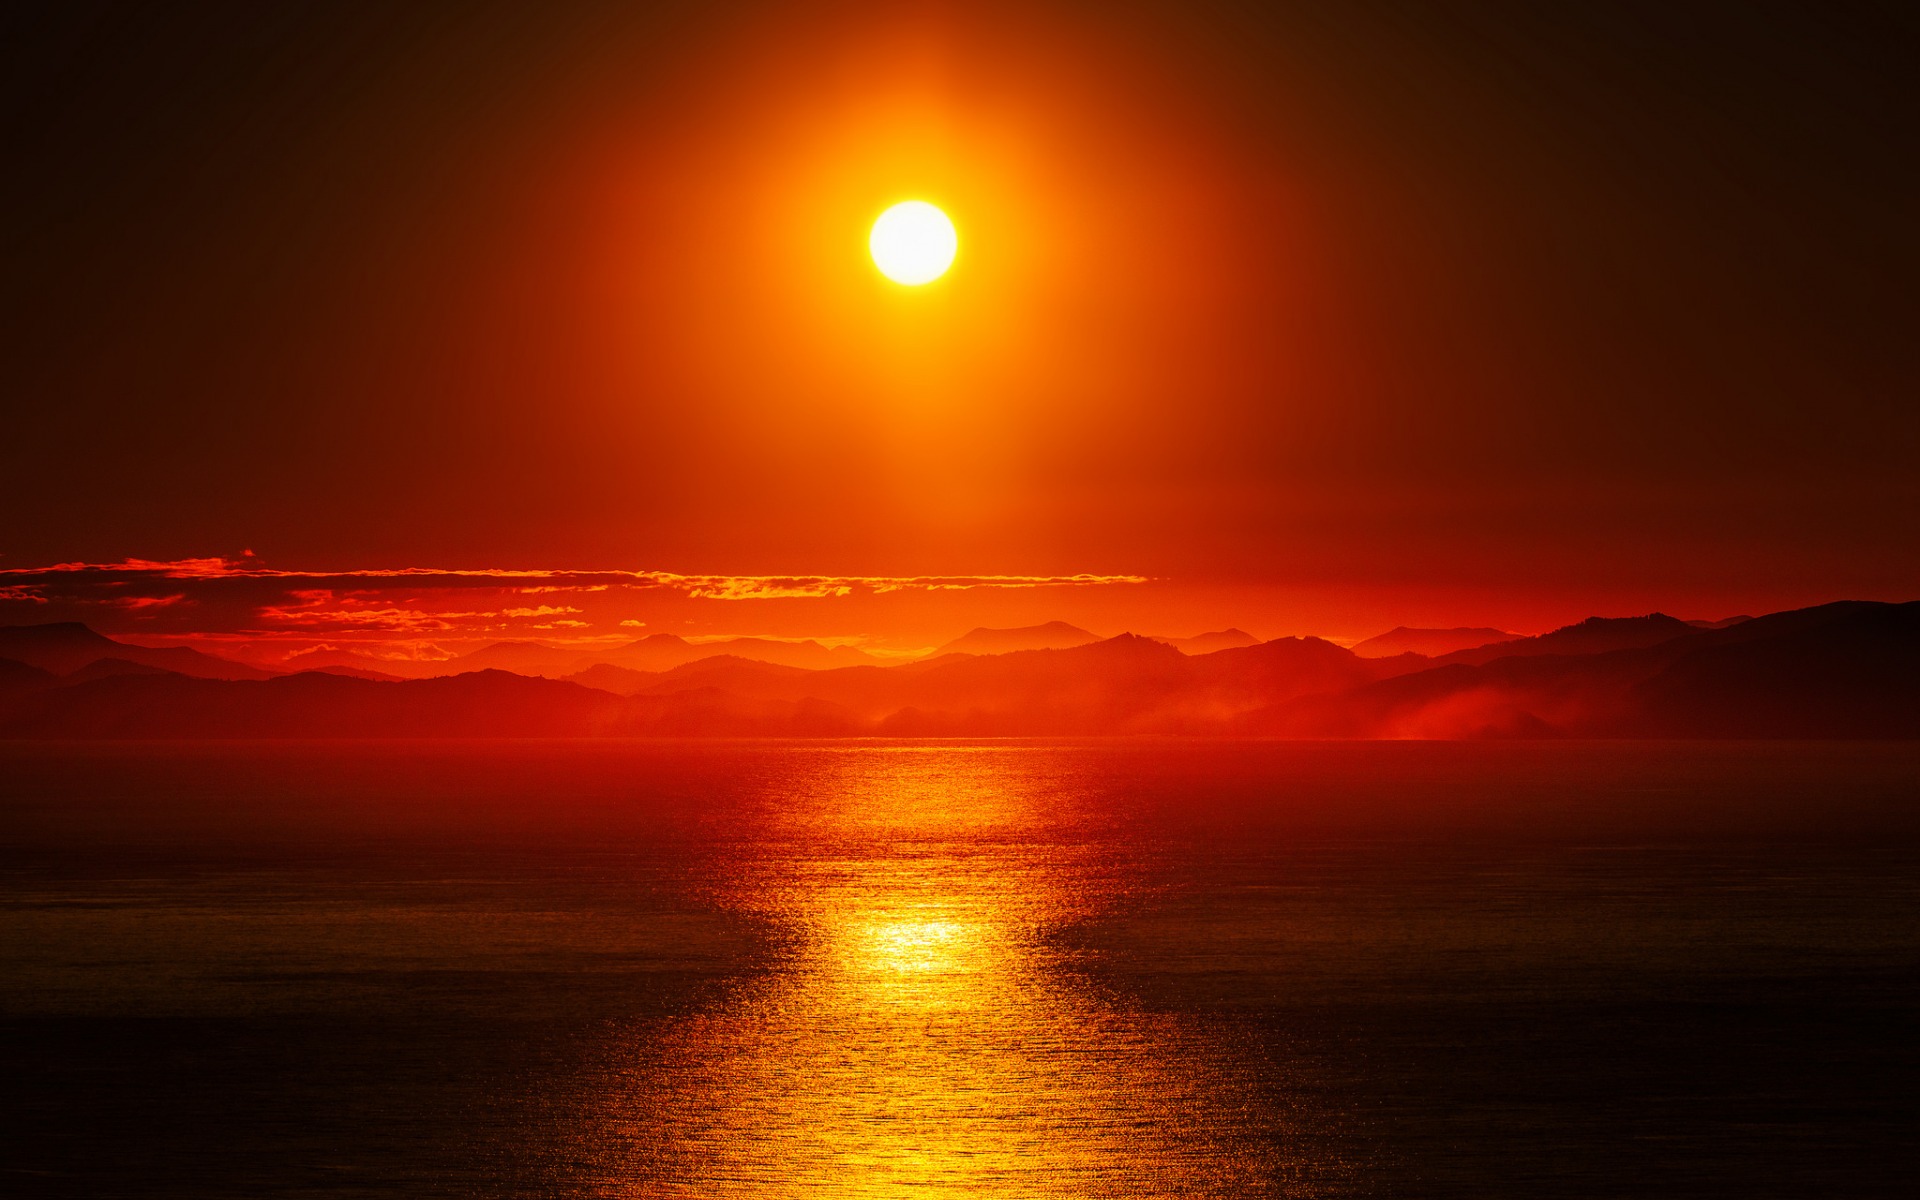 Скачать обои бесплатно Солнце, Отражение, Океан, Солнечный Луч, Земля/природа, Закат Солнца, Оранжевый Цвет) картинка на рабочий стол ПК